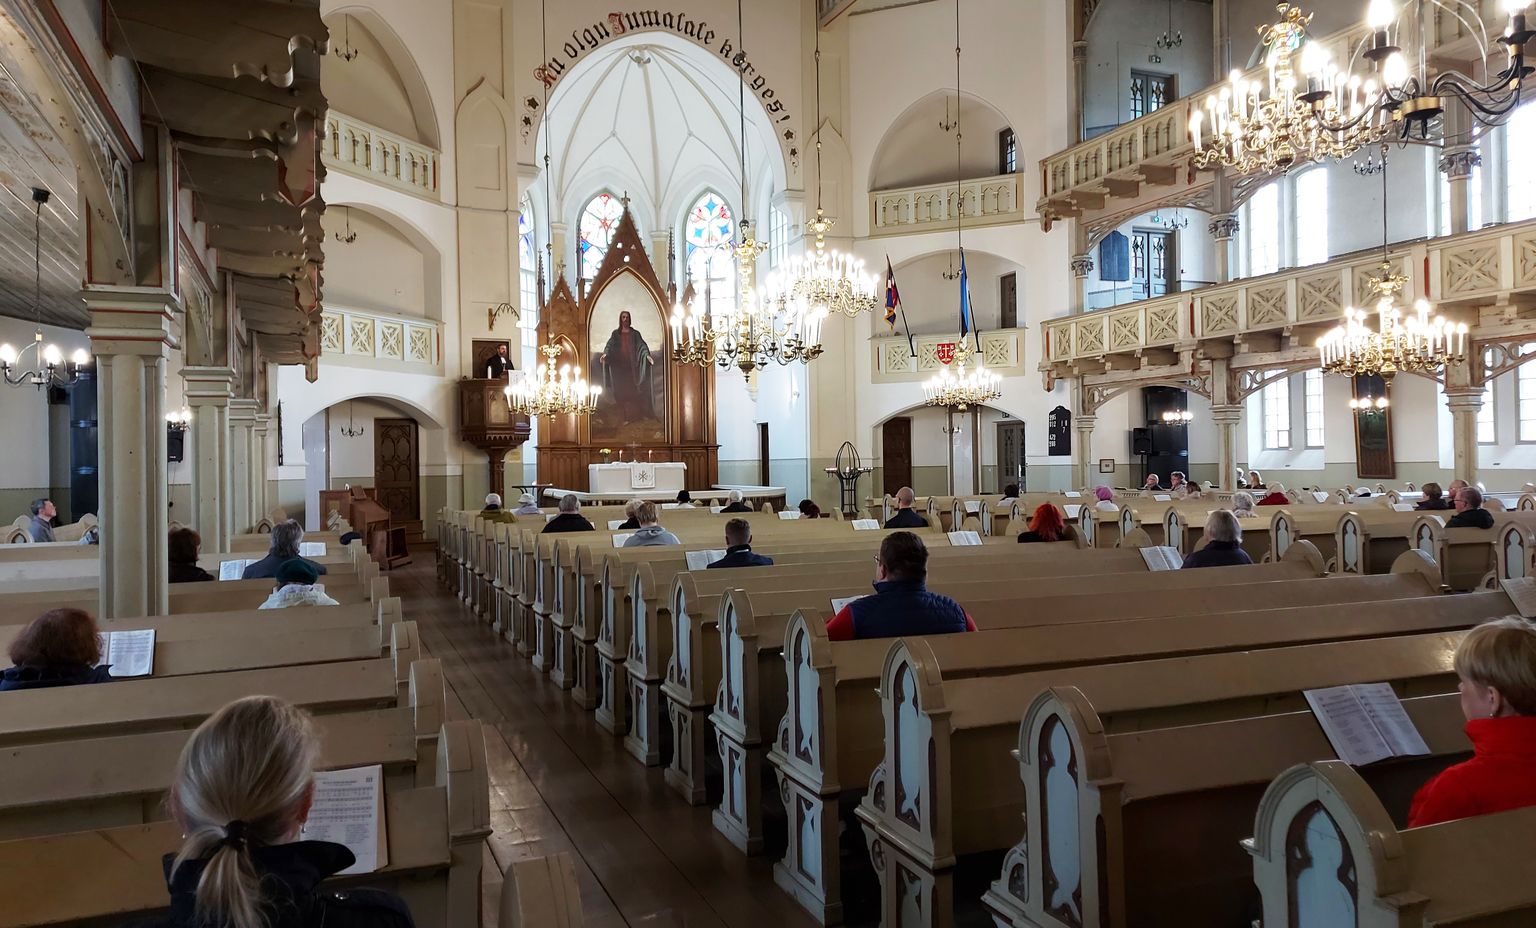 Jumalateenistus Tartu Peetri kirikus 17. mail. Kantslis peab jutlust õpetaja Ants Tooming.